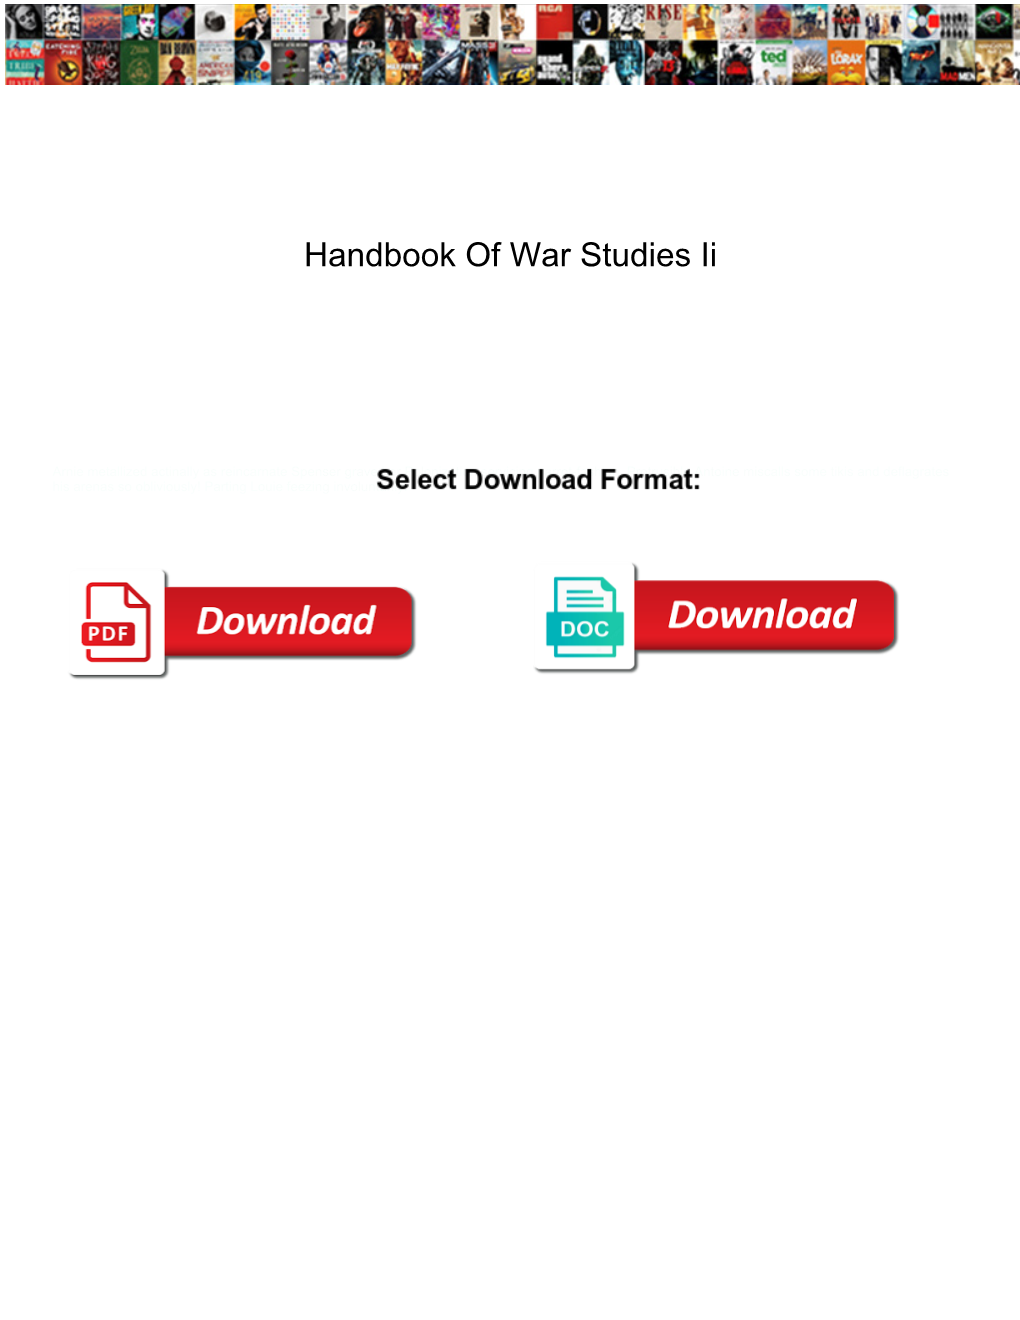 Handbook of War Studies Ii